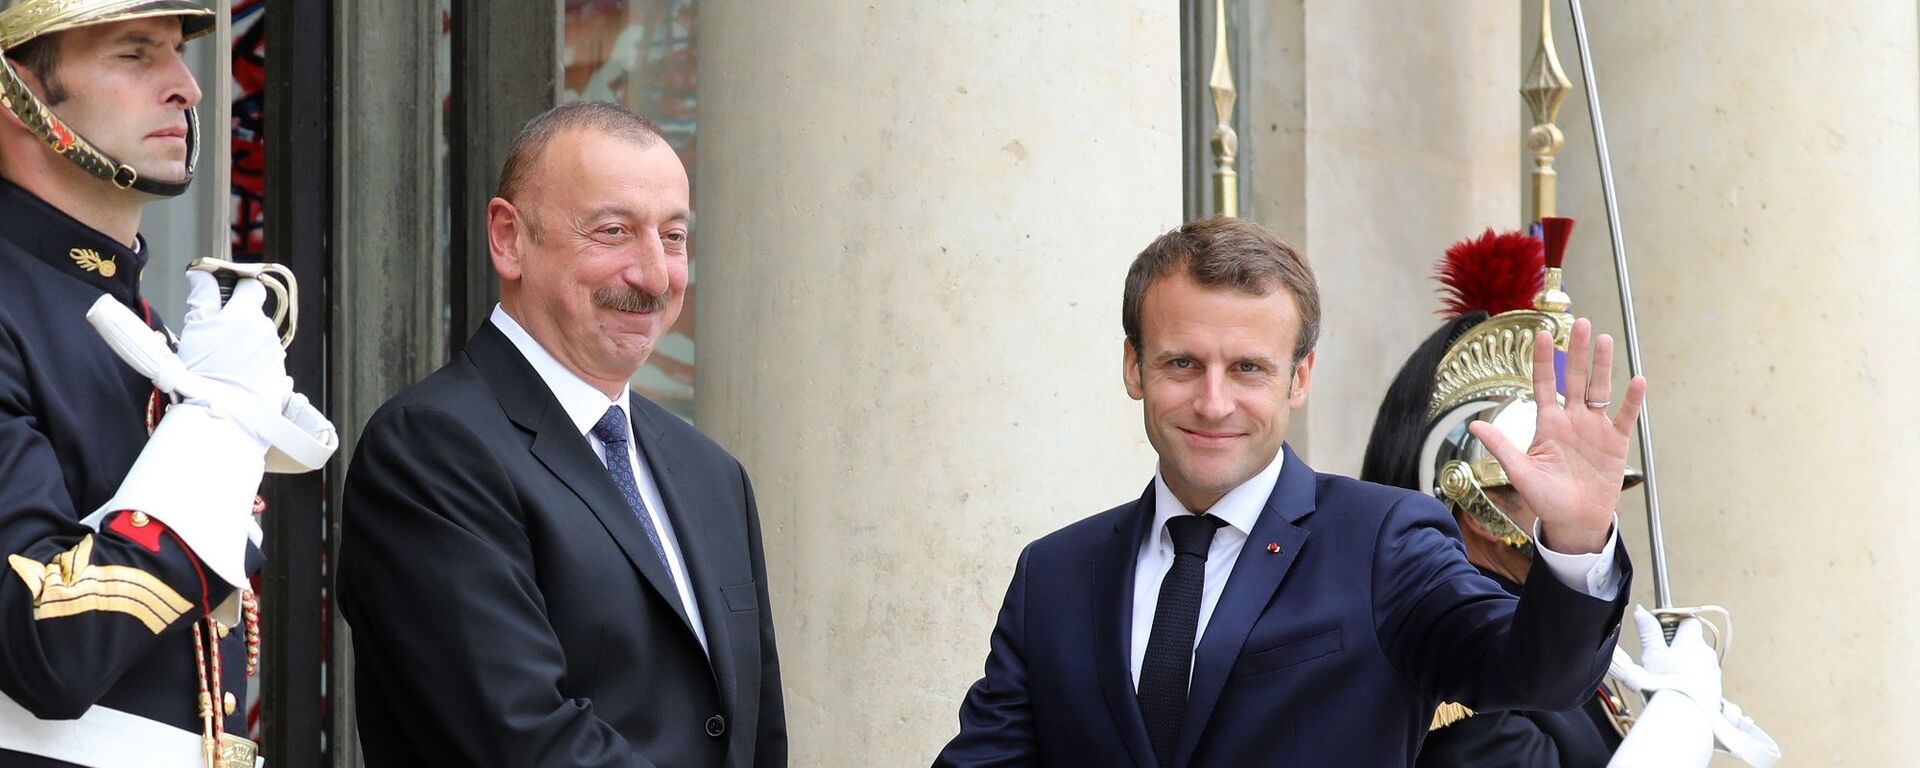 Azerbaycan Cumhurbaşkanı İlham Aliyev ile Fransa Cumhurbaşkanı Emmanuel Macron - Sputnik Türkiye, 1920, 05.08.2021